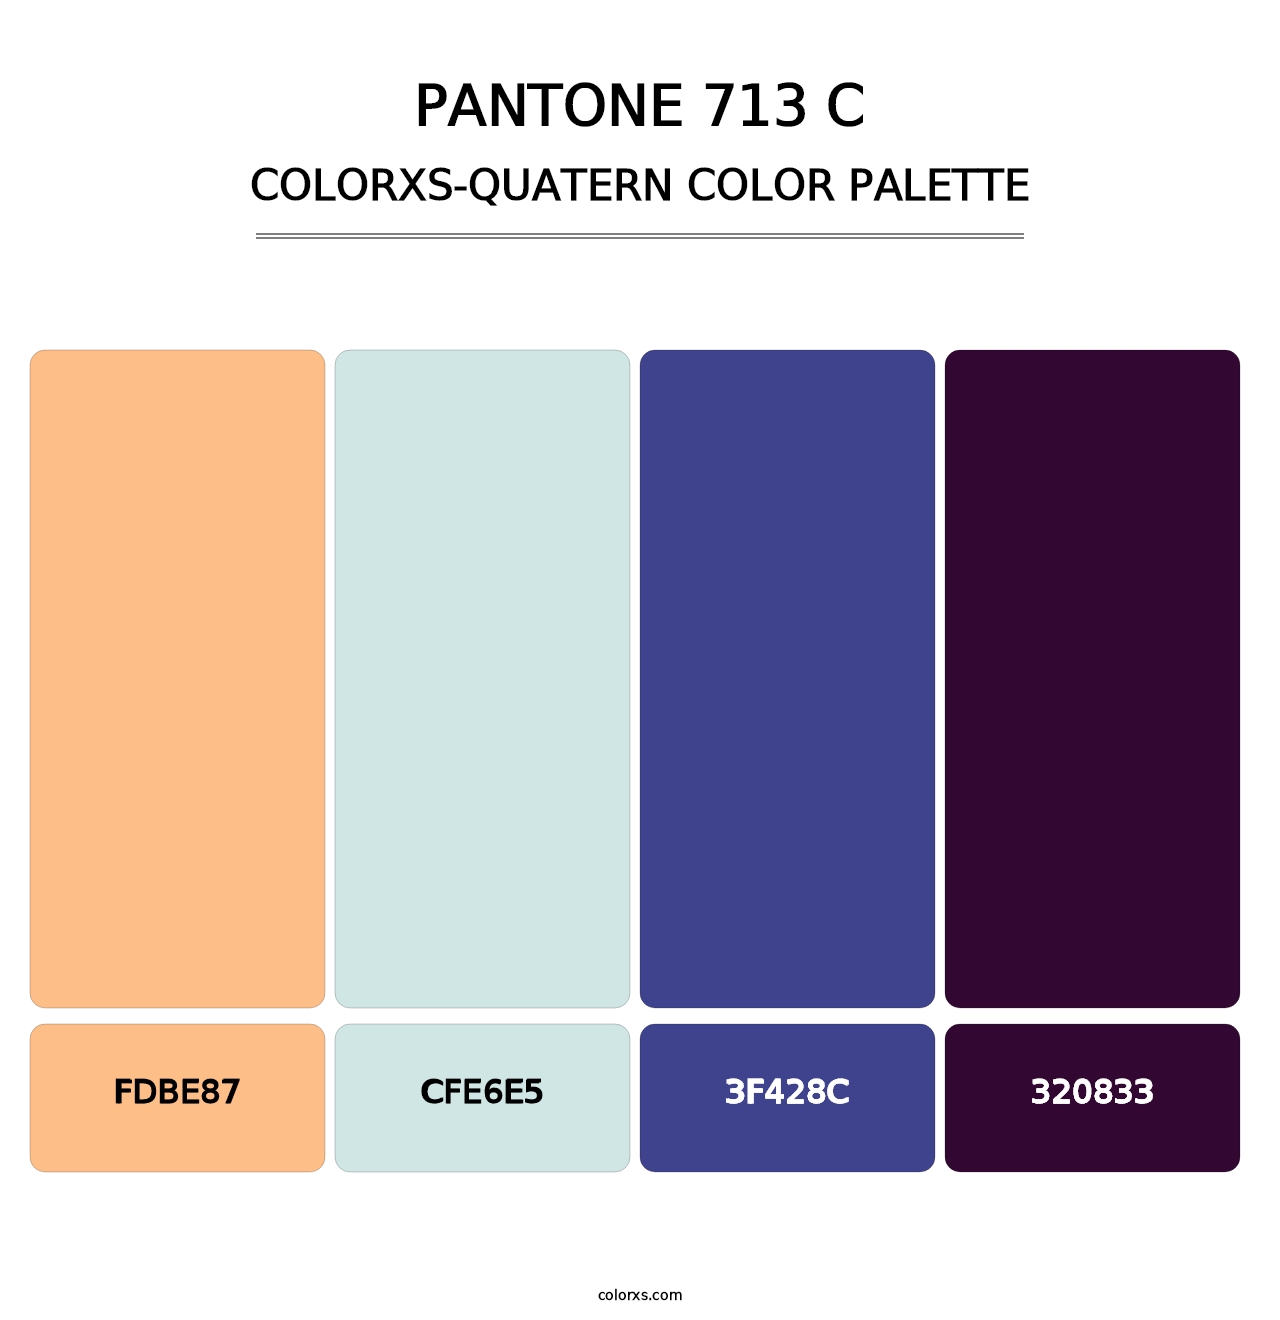 PANTONE 713 C - Colorxs Quatern Palette